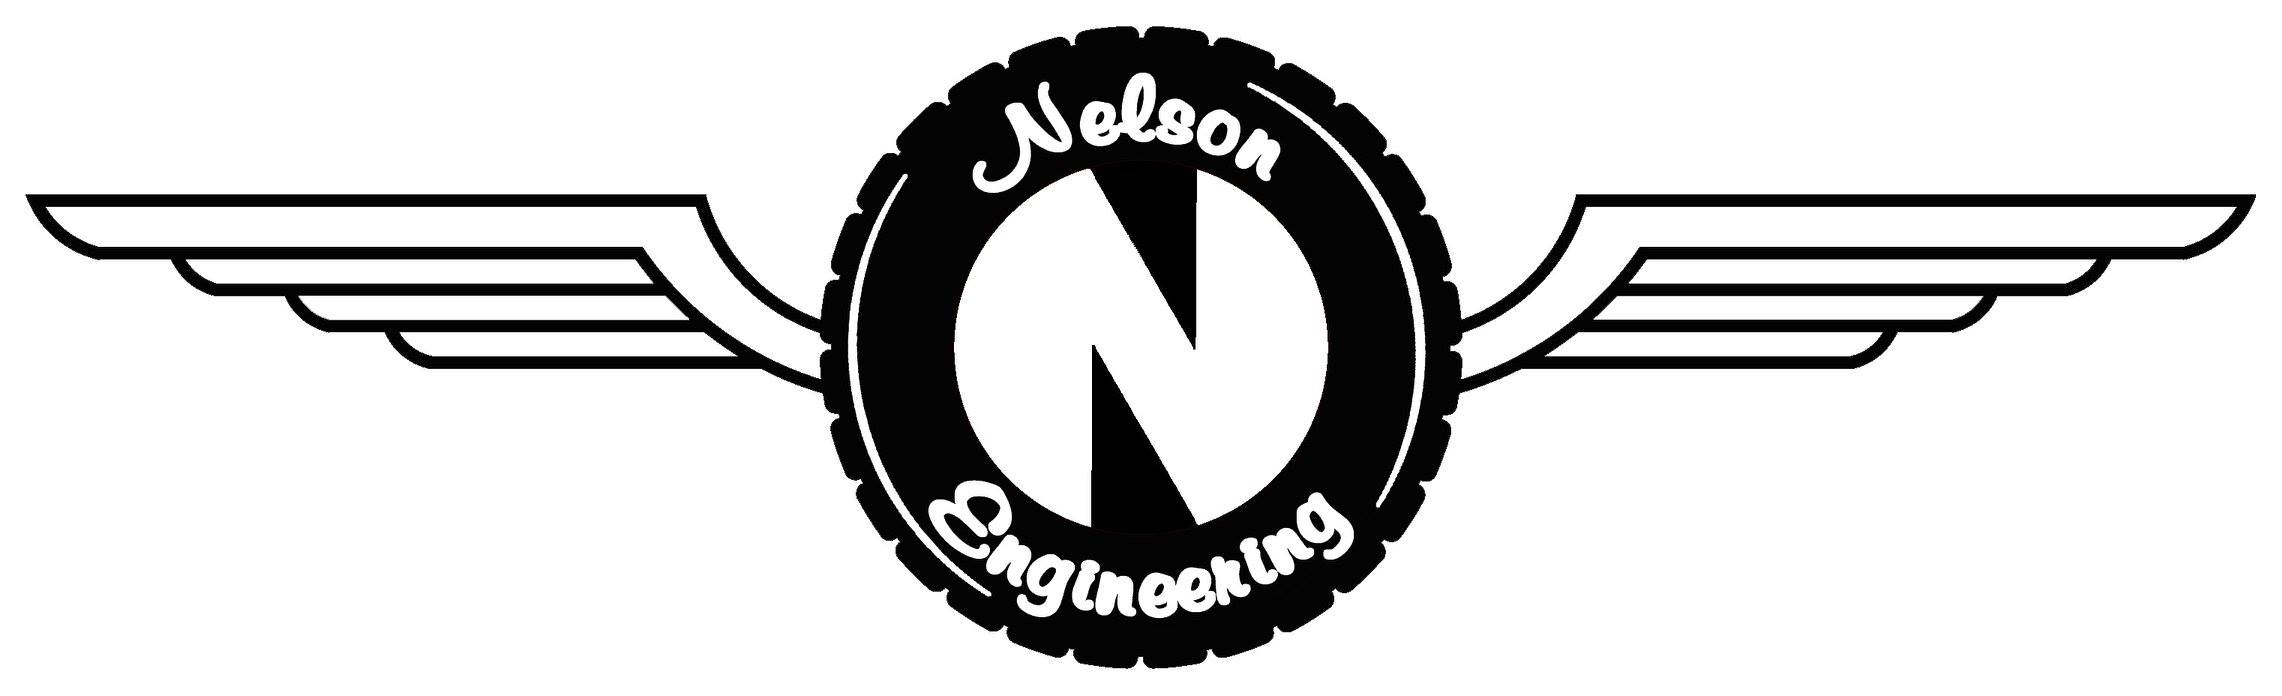 Nelson Car Logo - Nelson Engineering Co. | FAA REPAIR STATION N4ER838N » Nelson ...